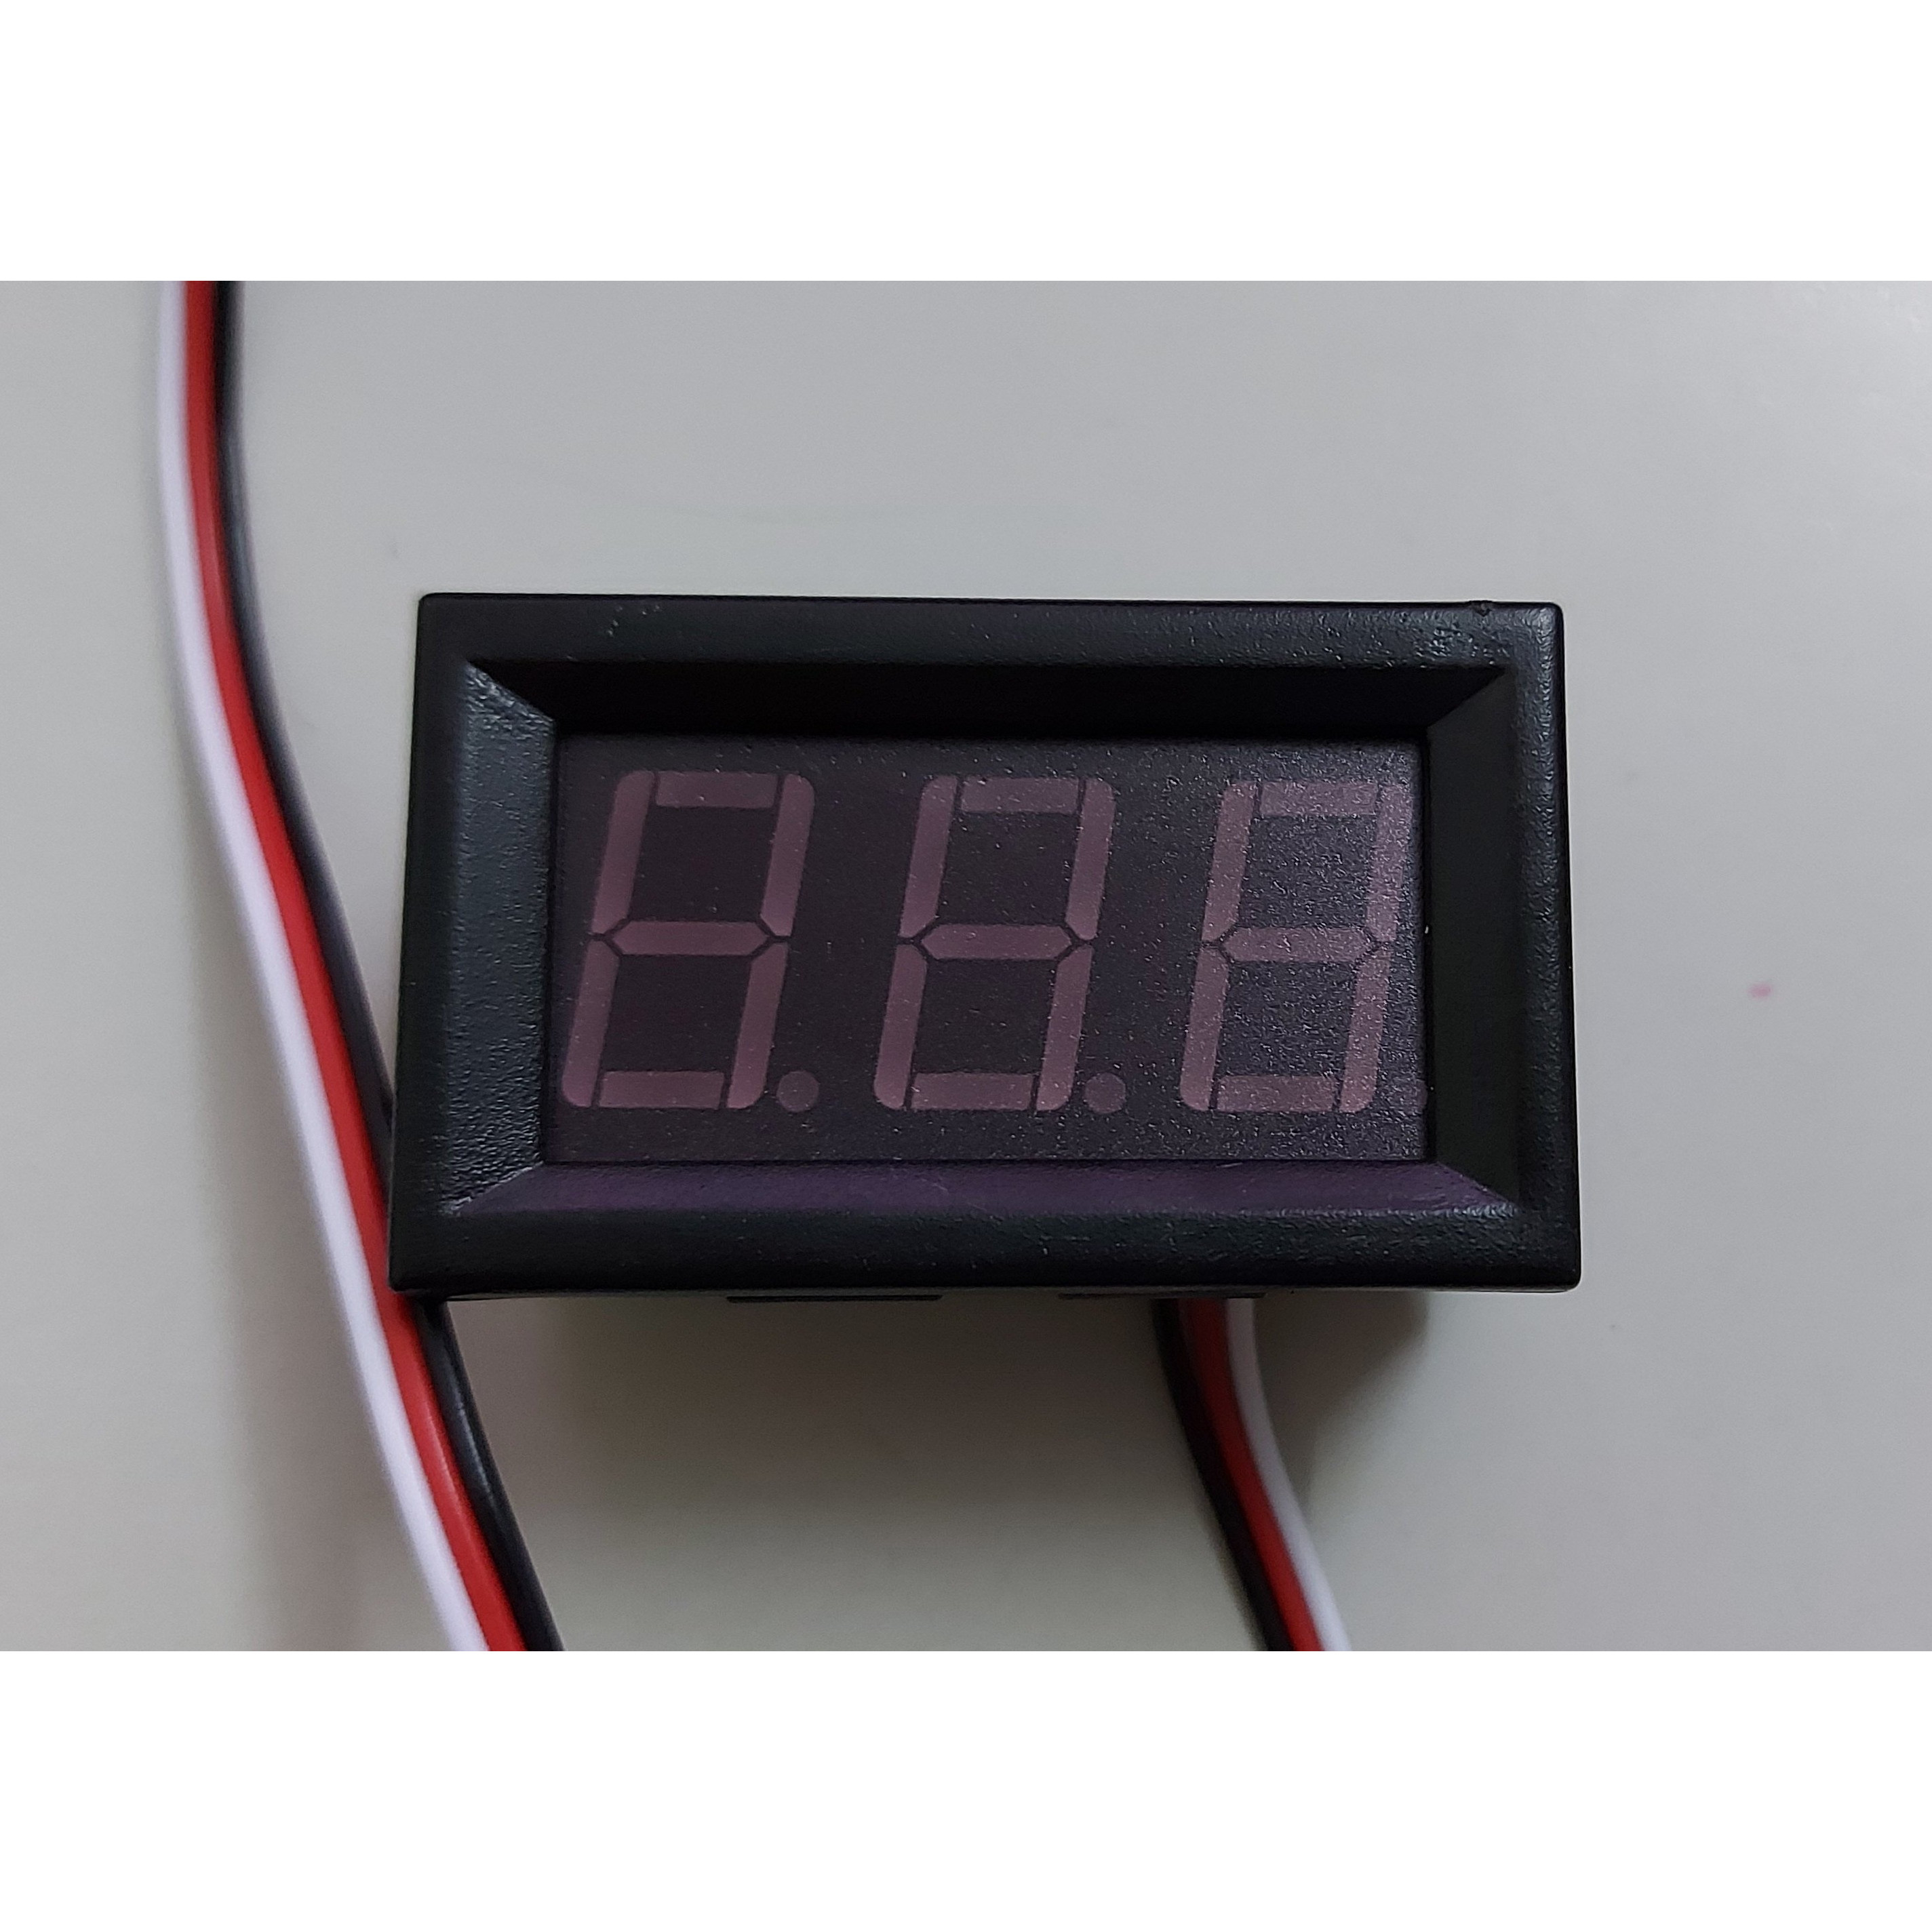 Đồng hồ led đo điện áp DC 0 - 100V 0.56" màu đỏ